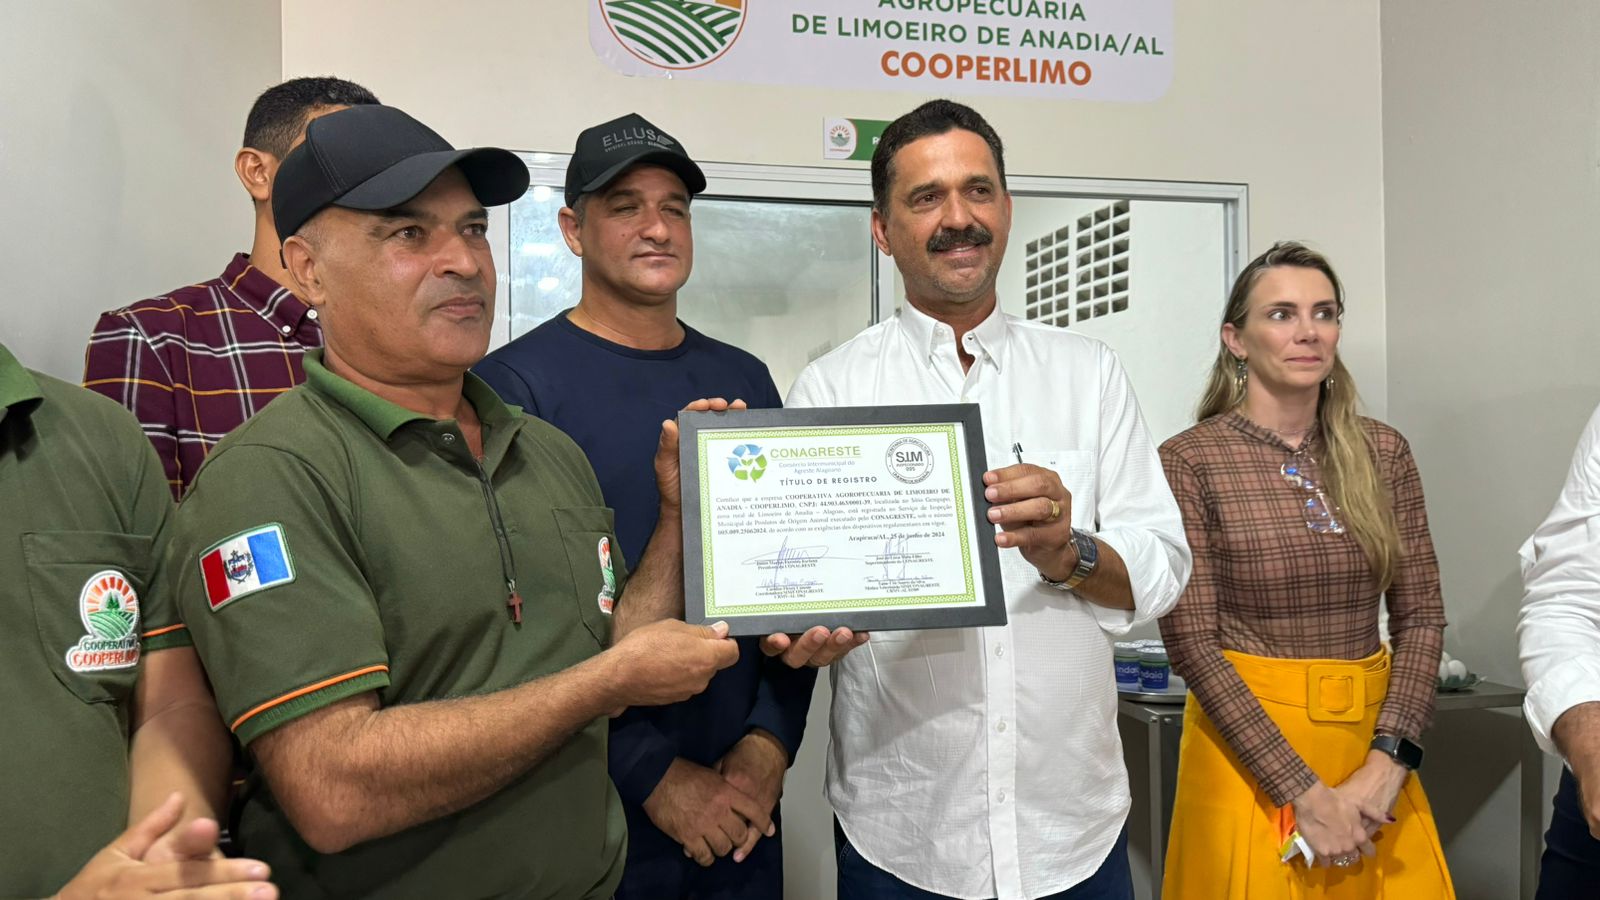 Cooperativa Agropecuária de Limoeiro de Anadia recebe certificação do SIM/Conagreste